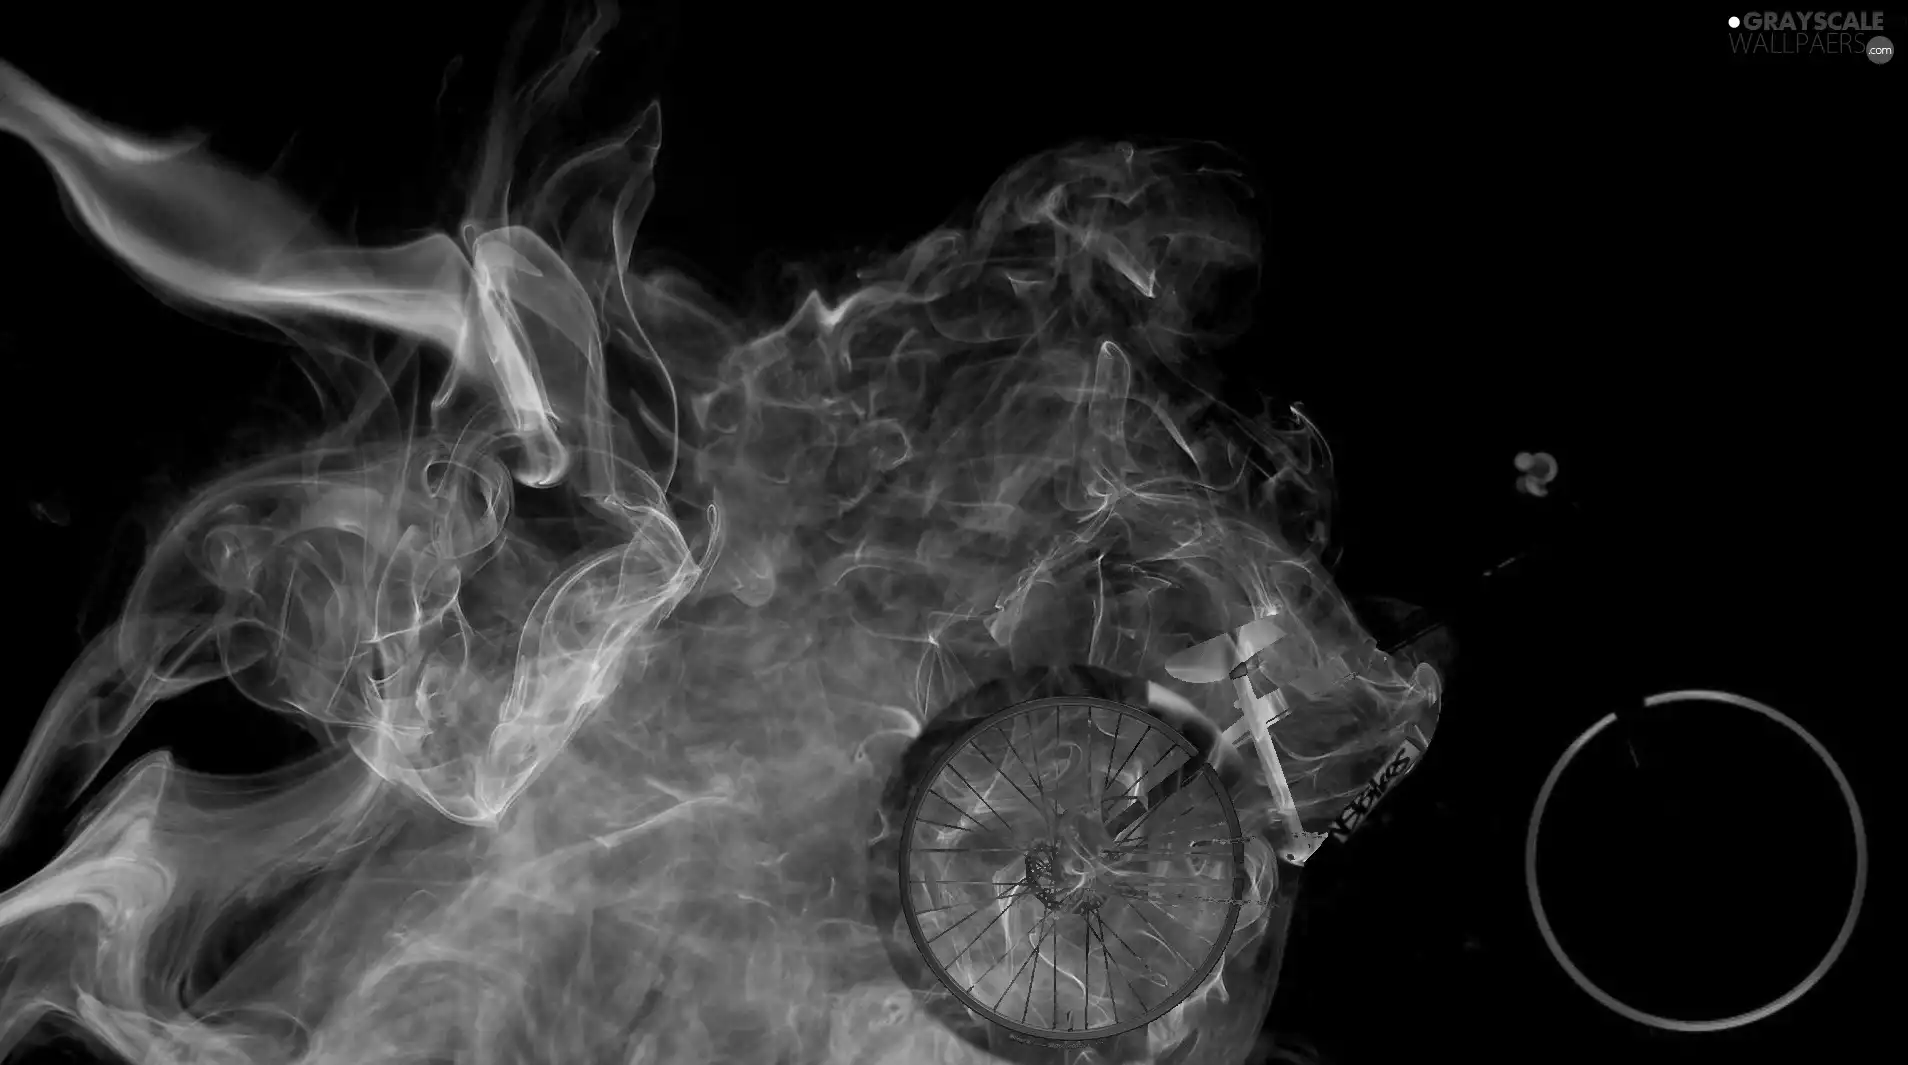 Bike, smoke